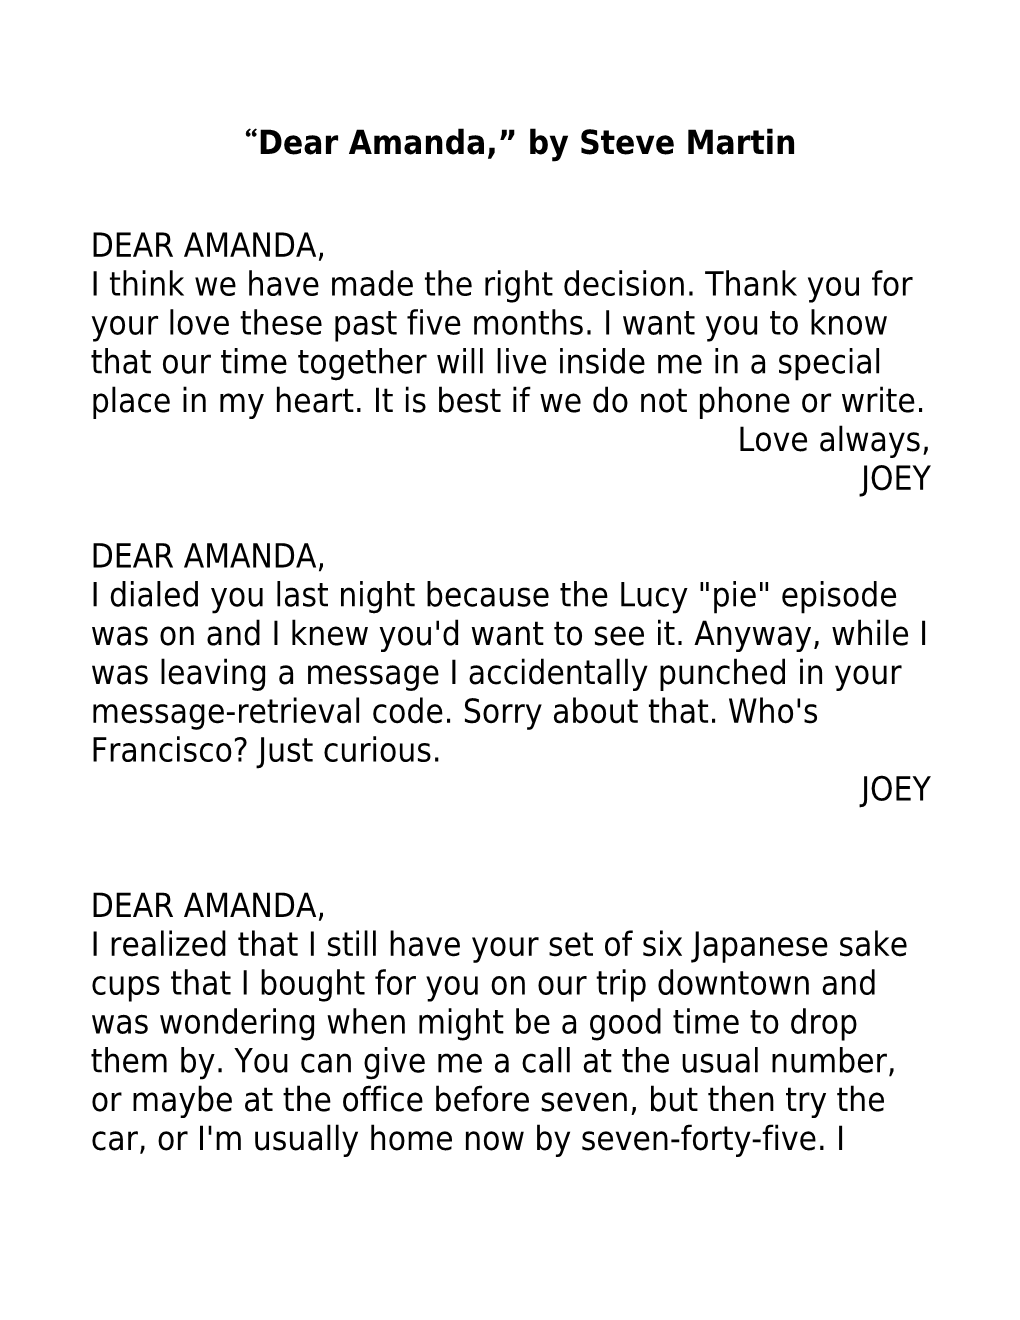 Dear Amanda, by Steve Martin